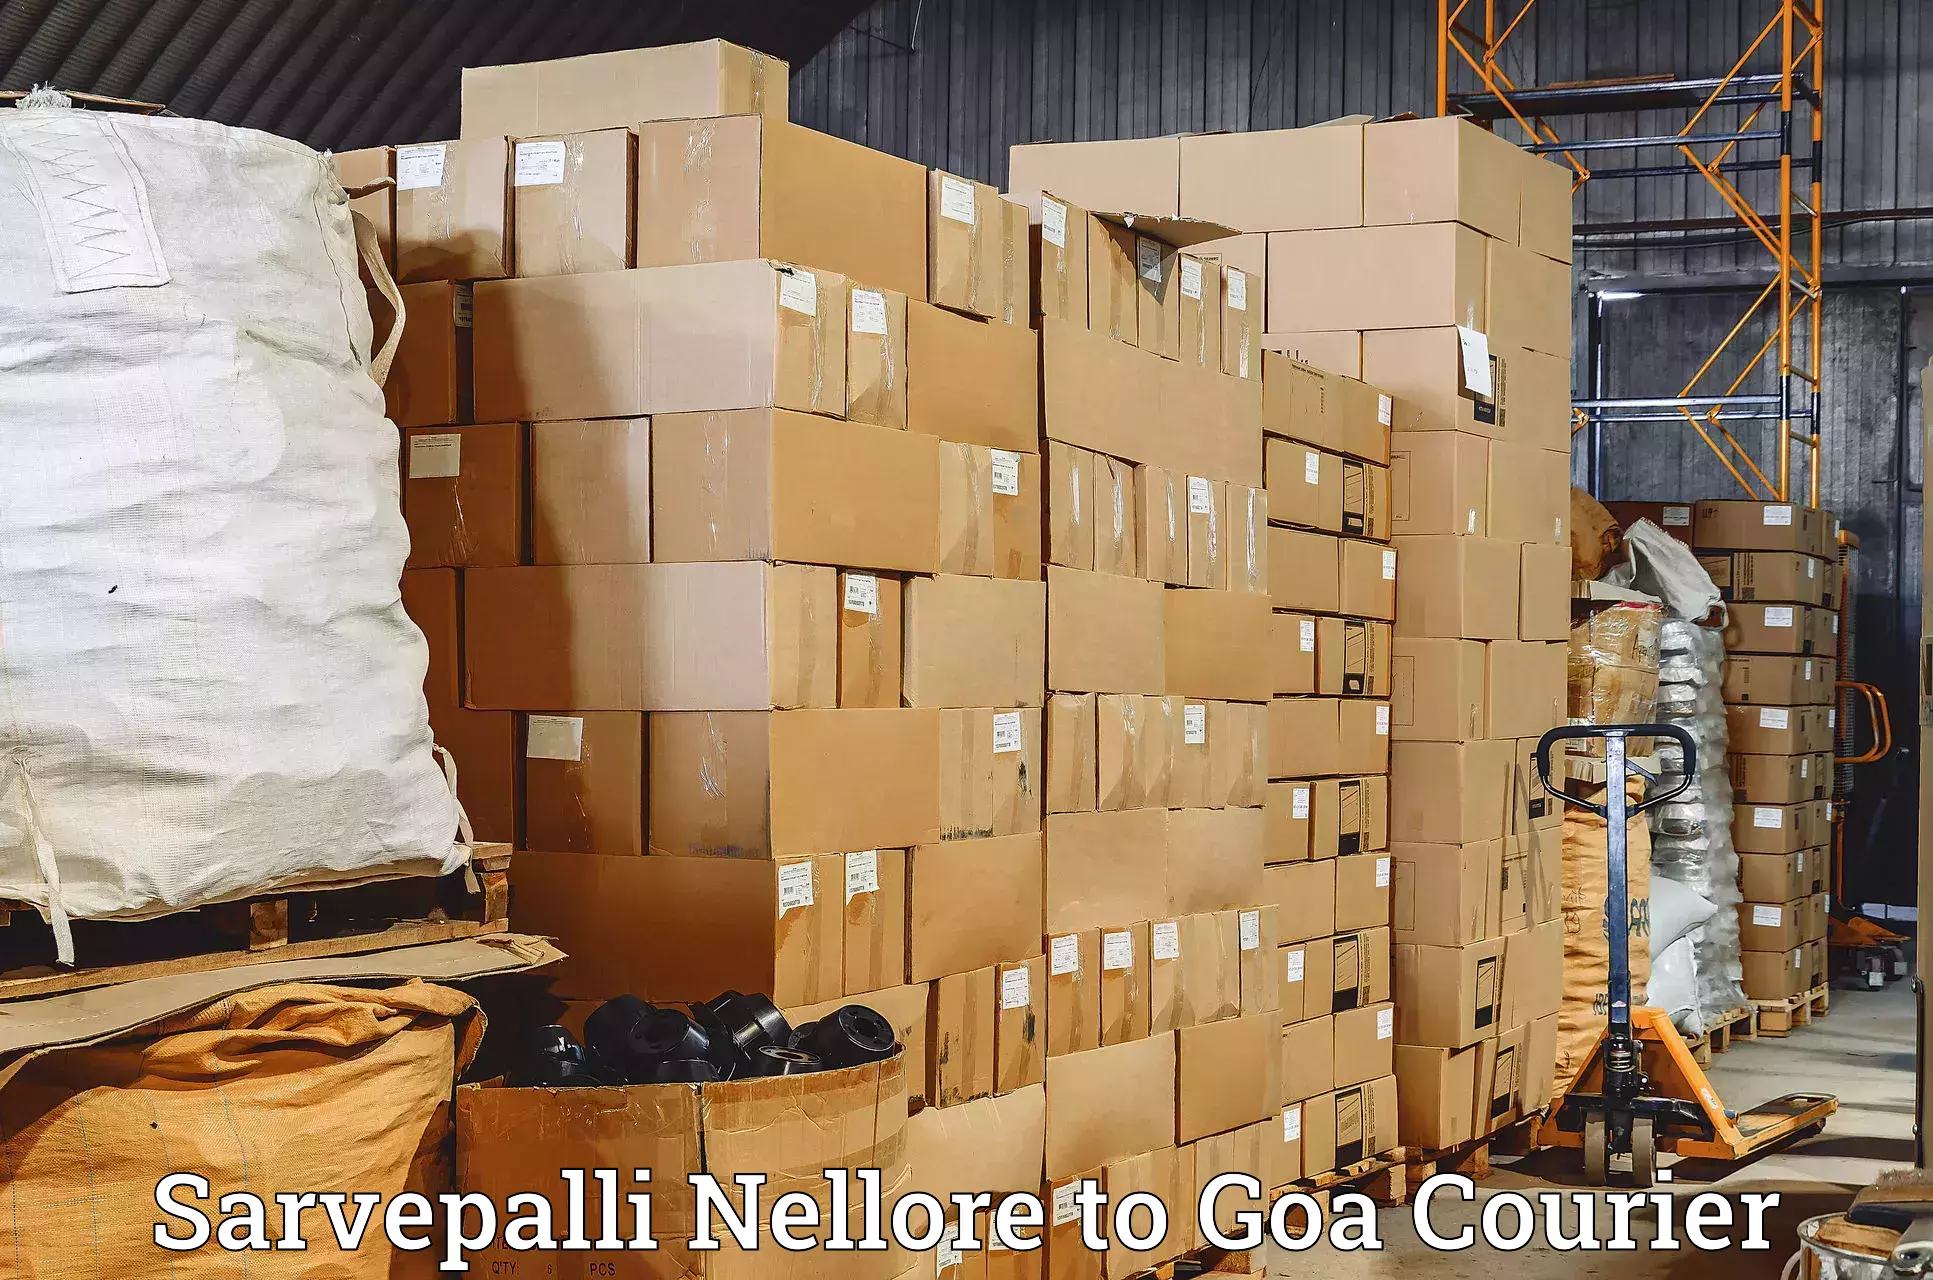 Reliable courier service Sarvepalli Nellore to Vasco da Gama